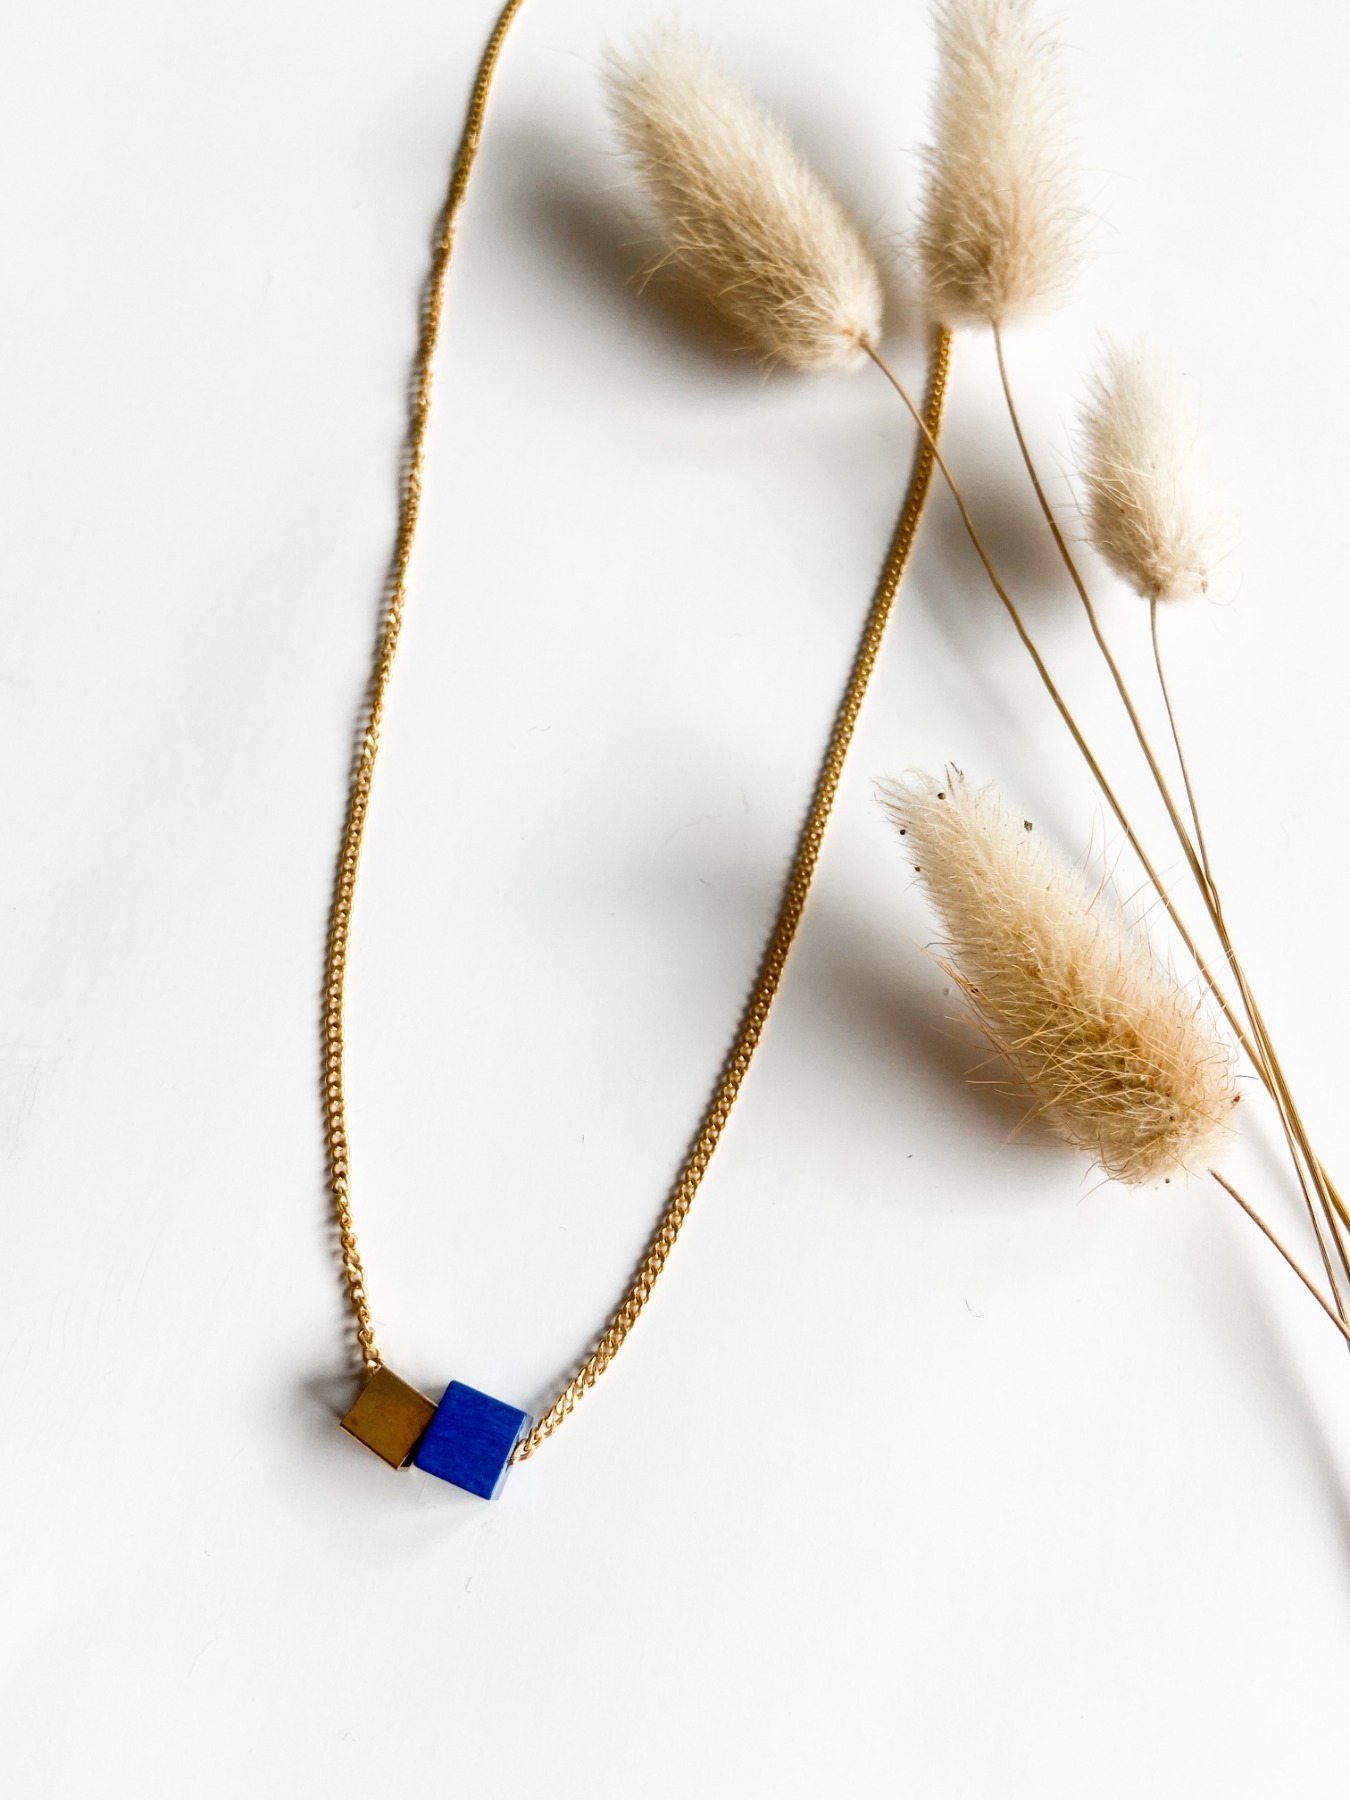 POTIPOTI Accessories - Wood Kette short - blau/gold - 45cm 2